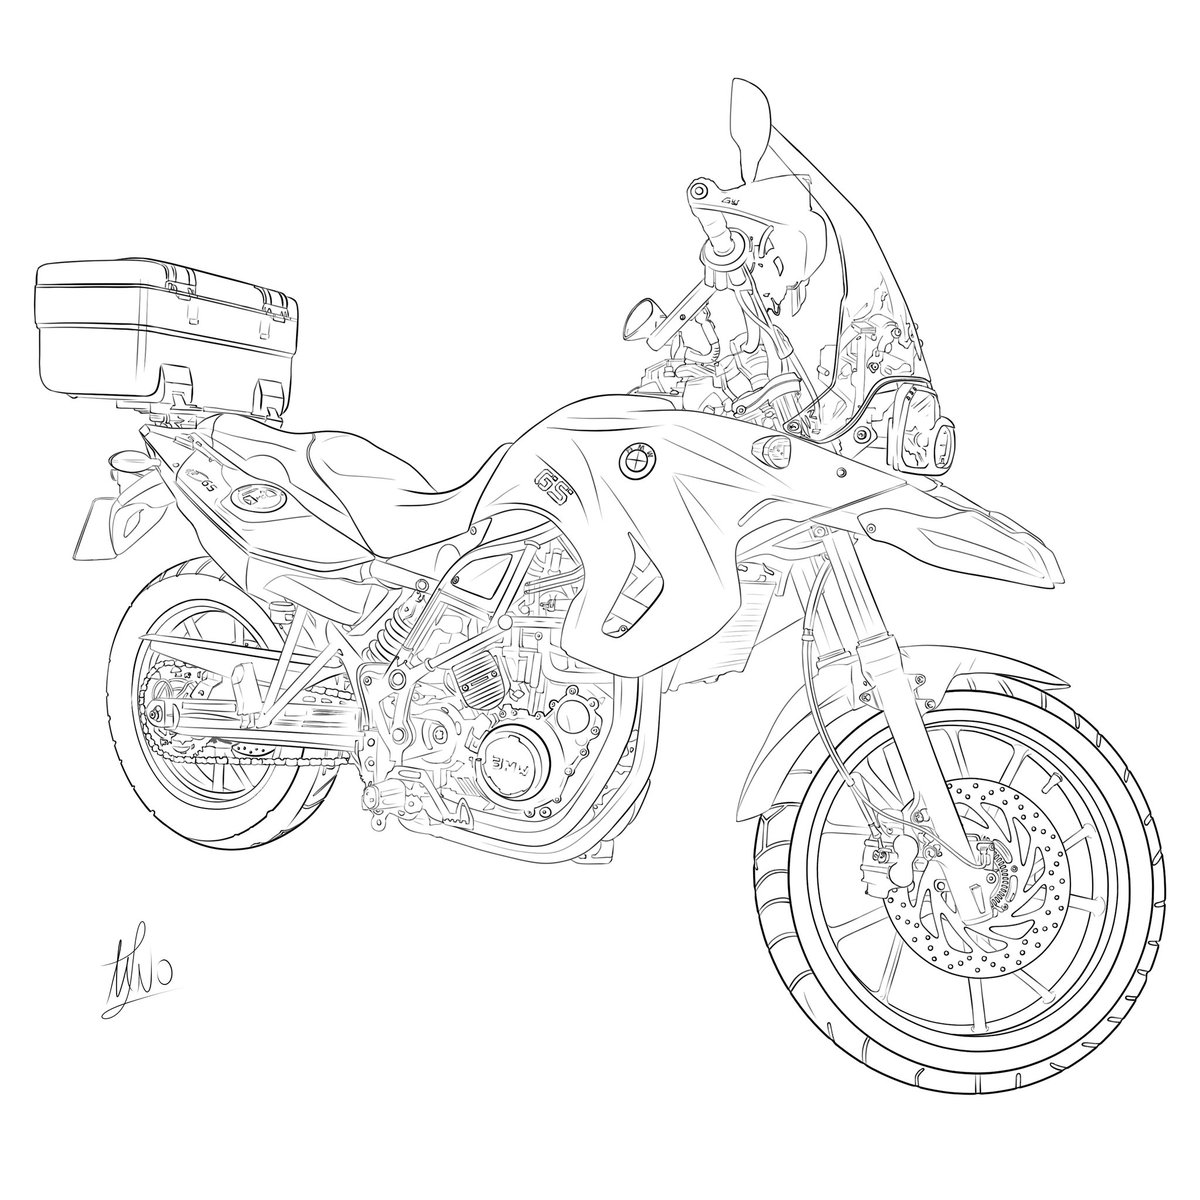 ¡Comisión para un enamorado de su moto terminada!

(Dibujo digital)
#motorcycles #drawing #digitaldrawing #bmwmotorcycle #artwork #comission